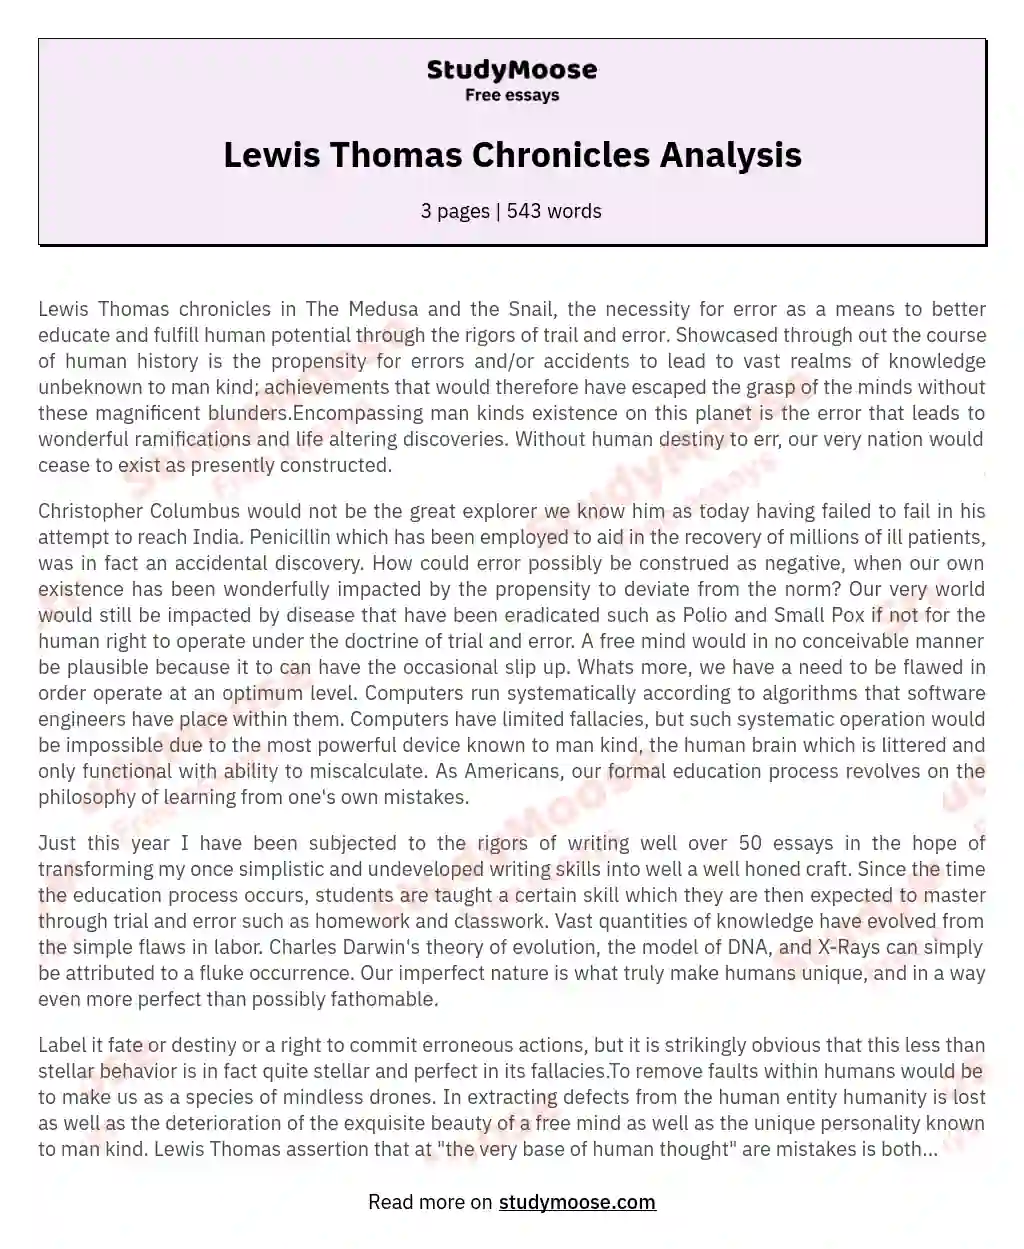 Lewis Thomas Chronicles Analysis essay